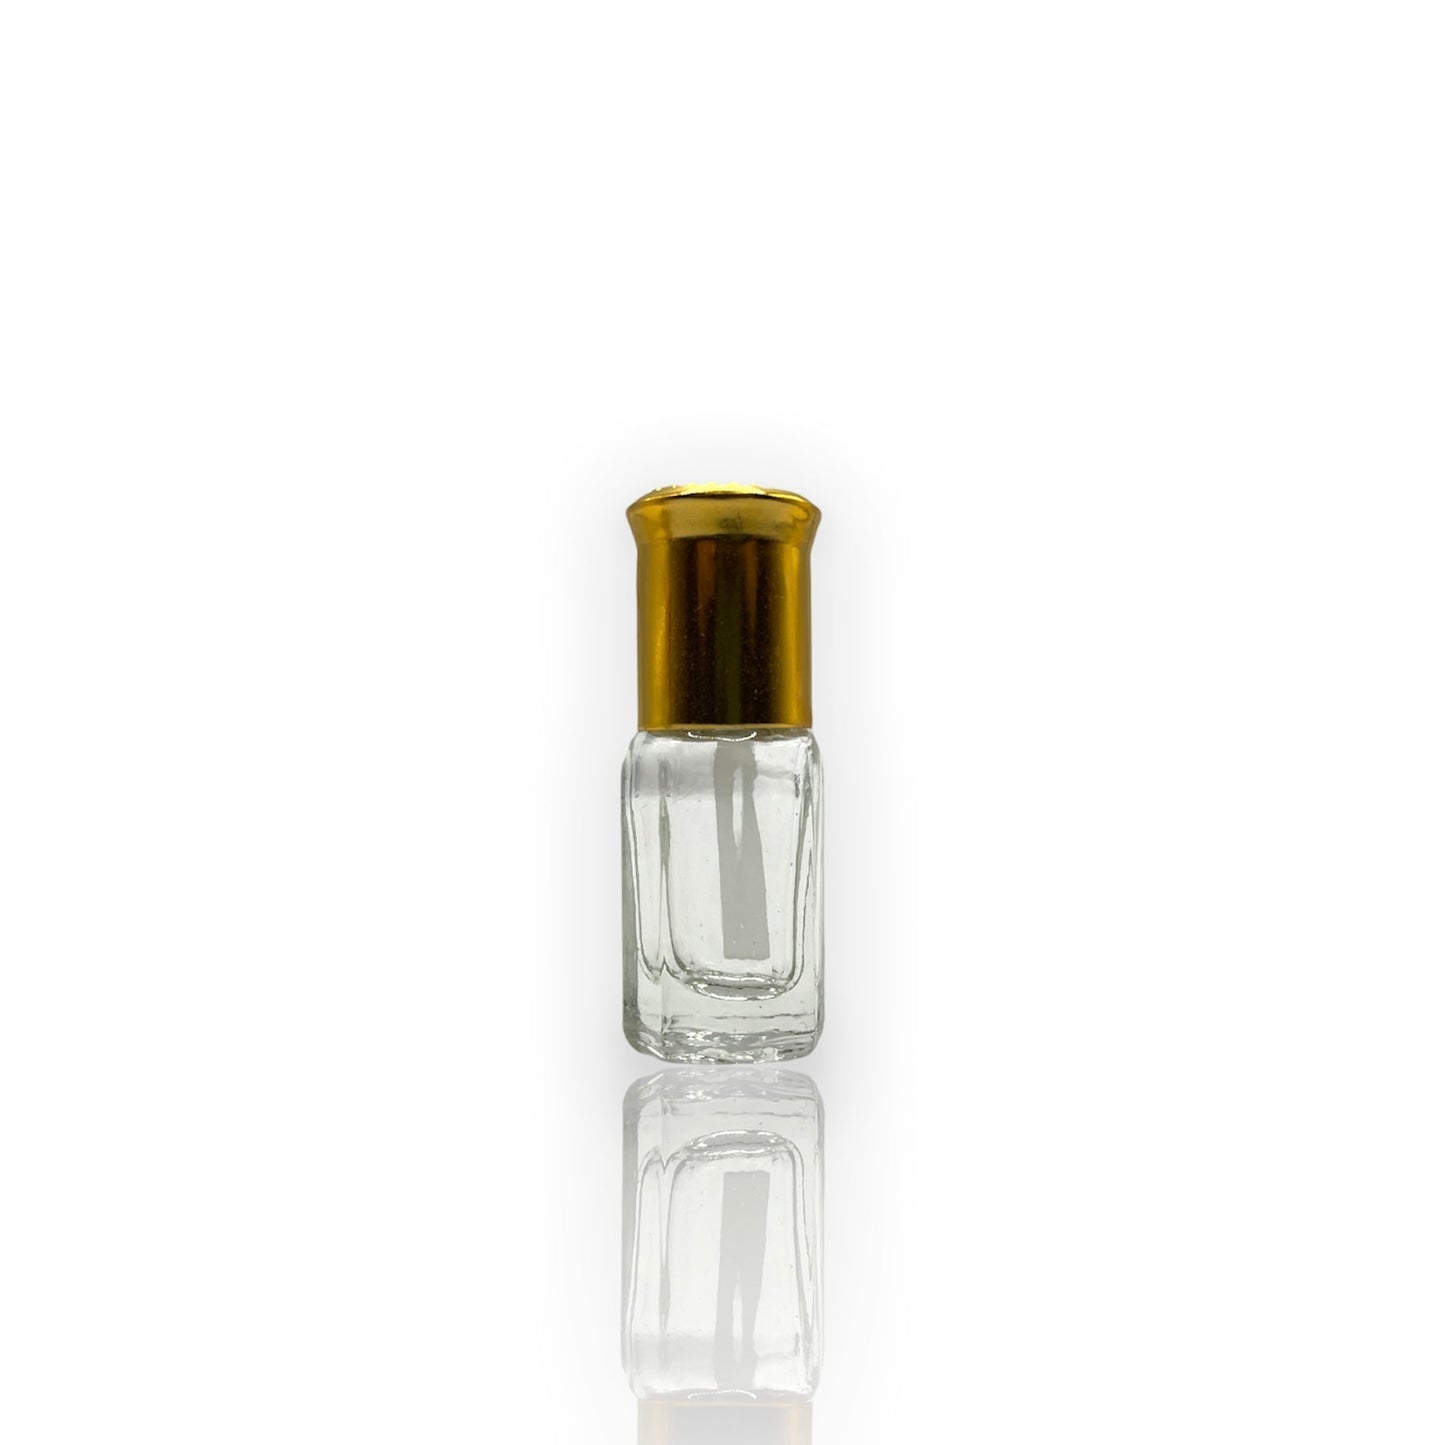 M-05 Oil Perfume *Inspired By Hugo Boss